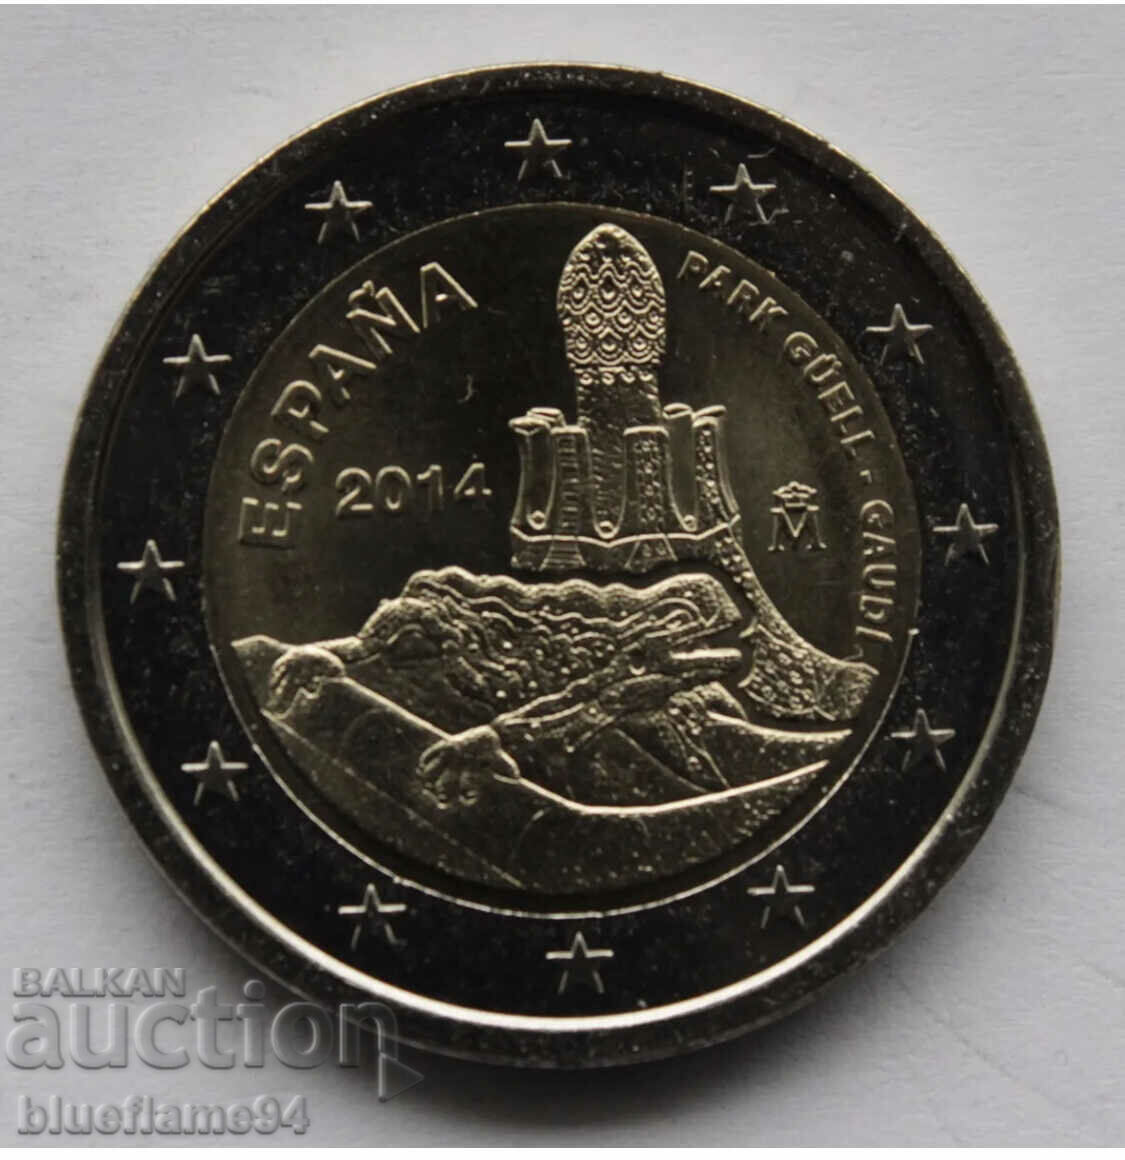 2 ευρώ στην Ισπανία το 2014